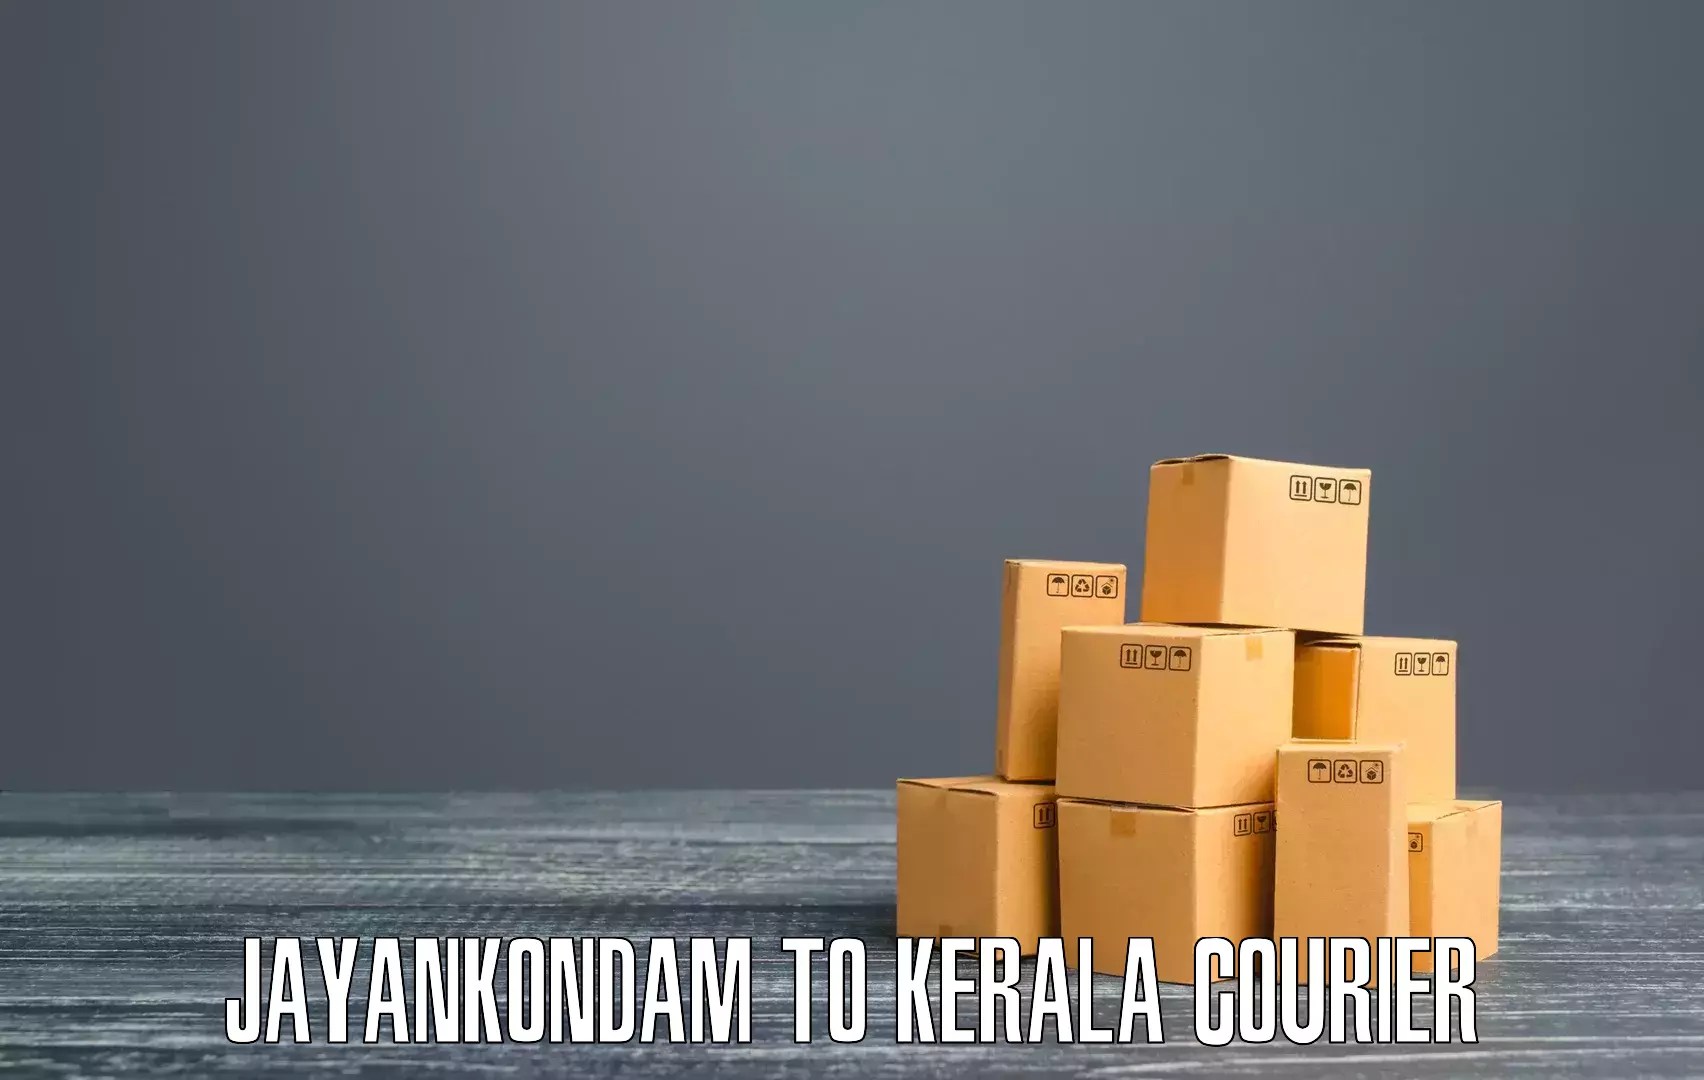 Budget-friendly shipping Jayankondam to Kumily